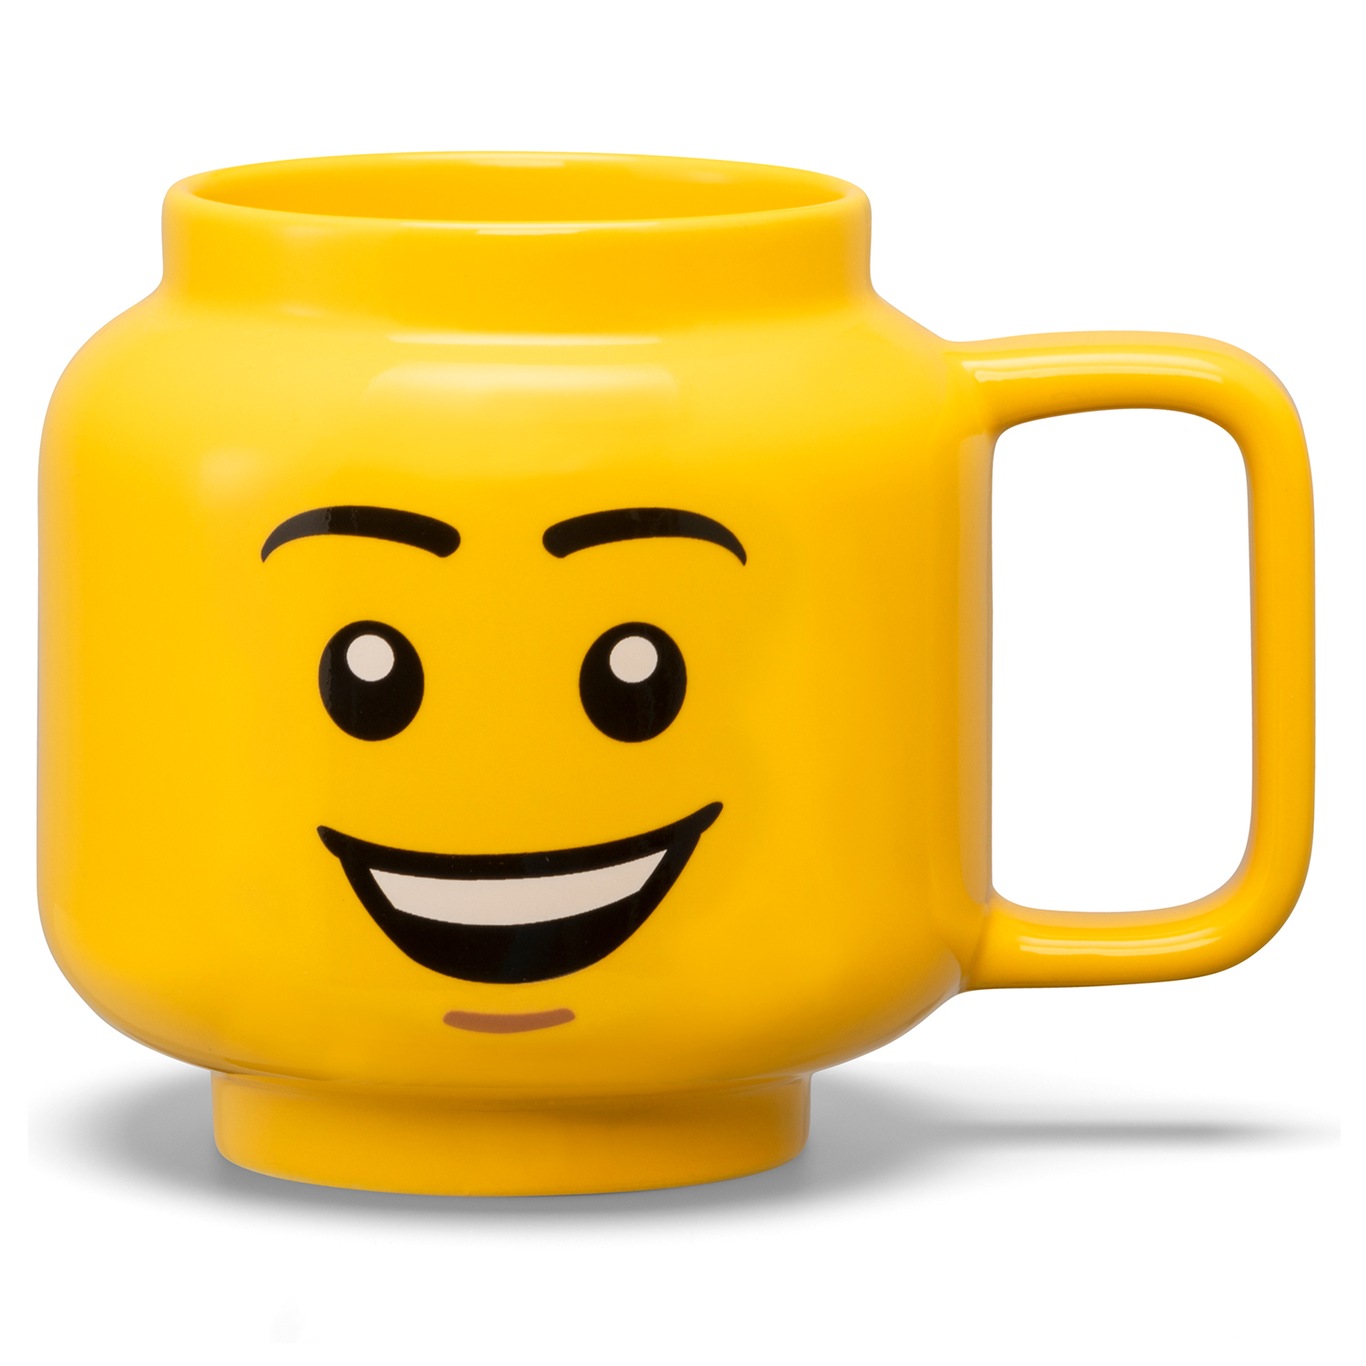 LEGO Ceramic Mug Small Boy Krus Gul, L